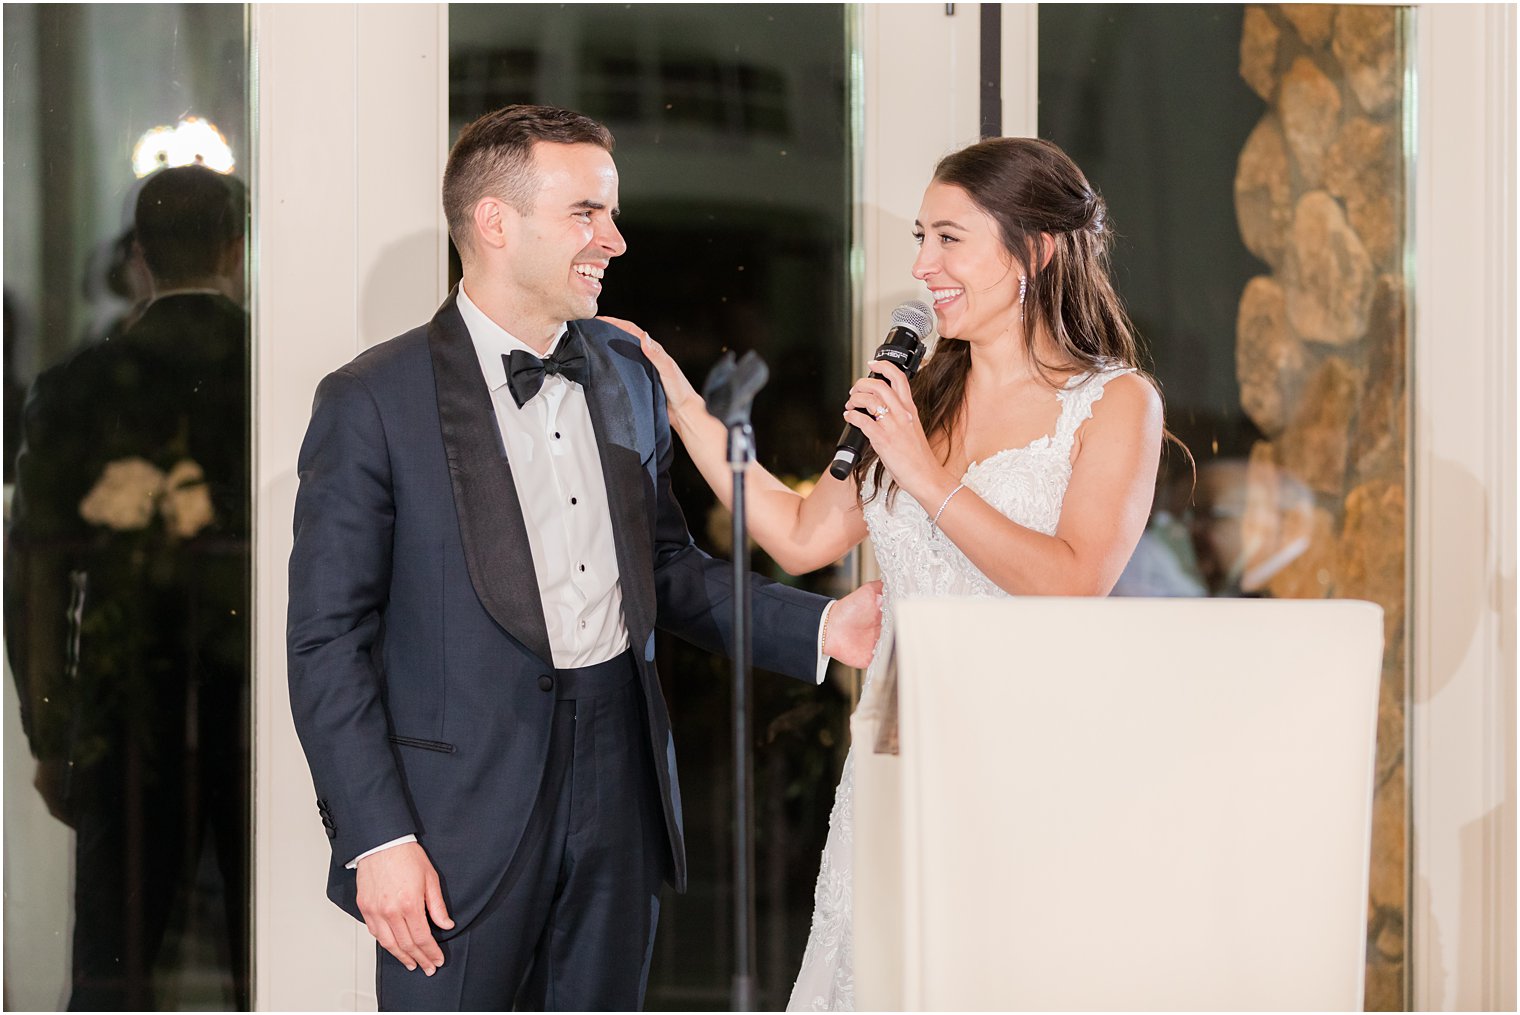 newlyweds give toast during NJ wedding reception